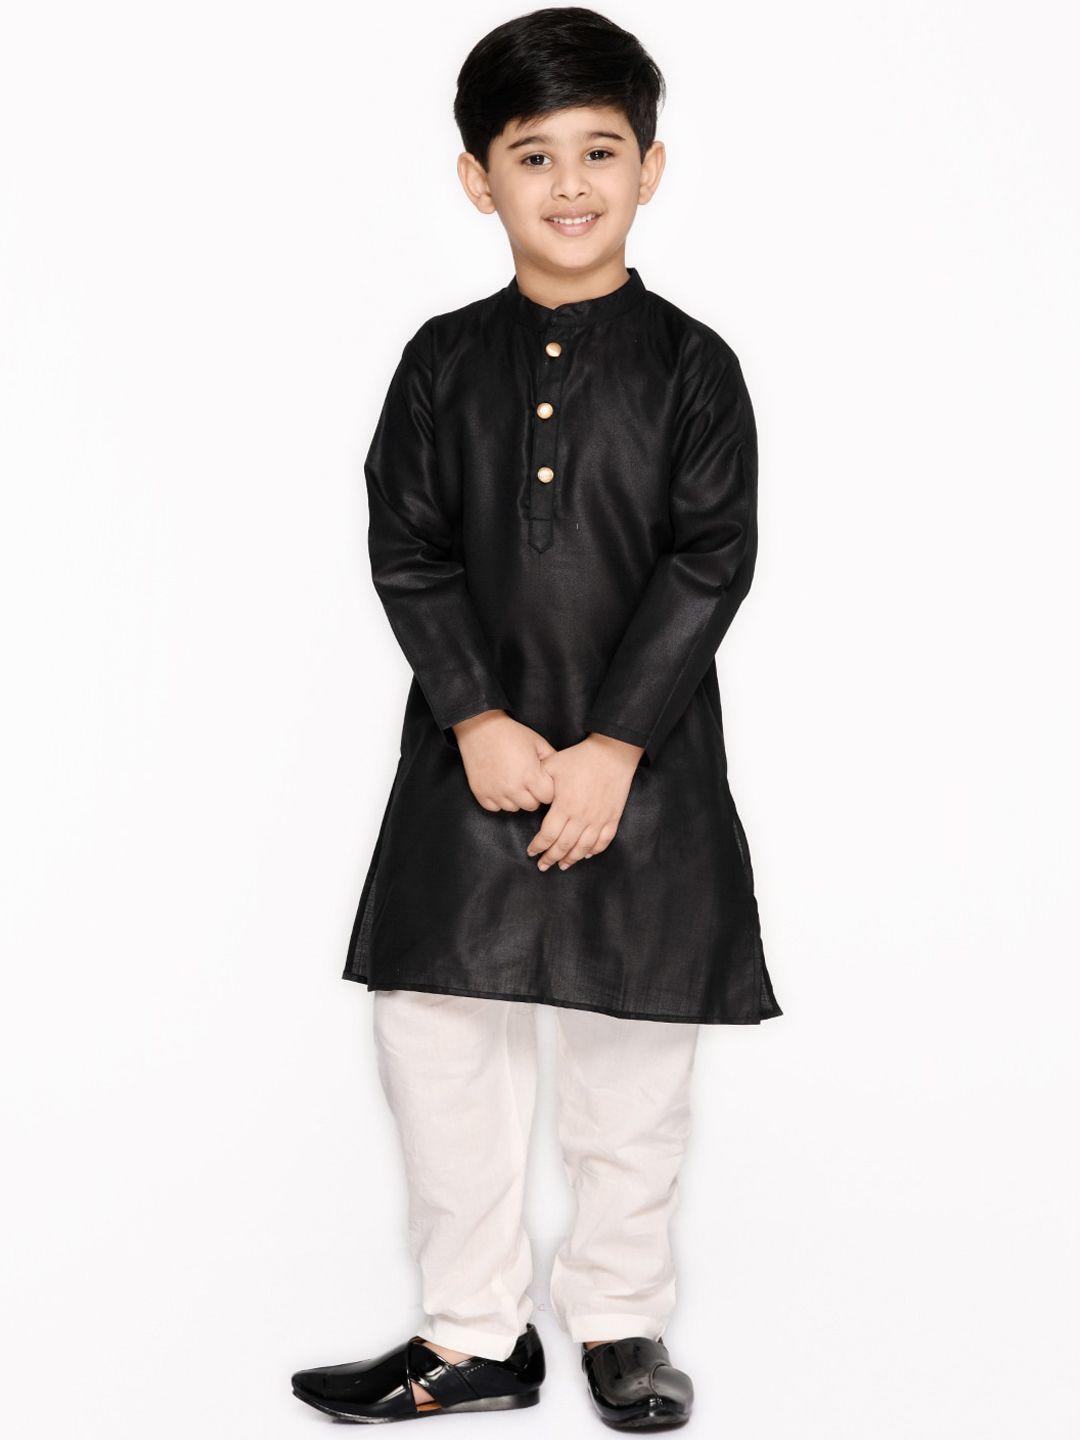 saka designs boys black & white pure cotton kurta with pyjamas